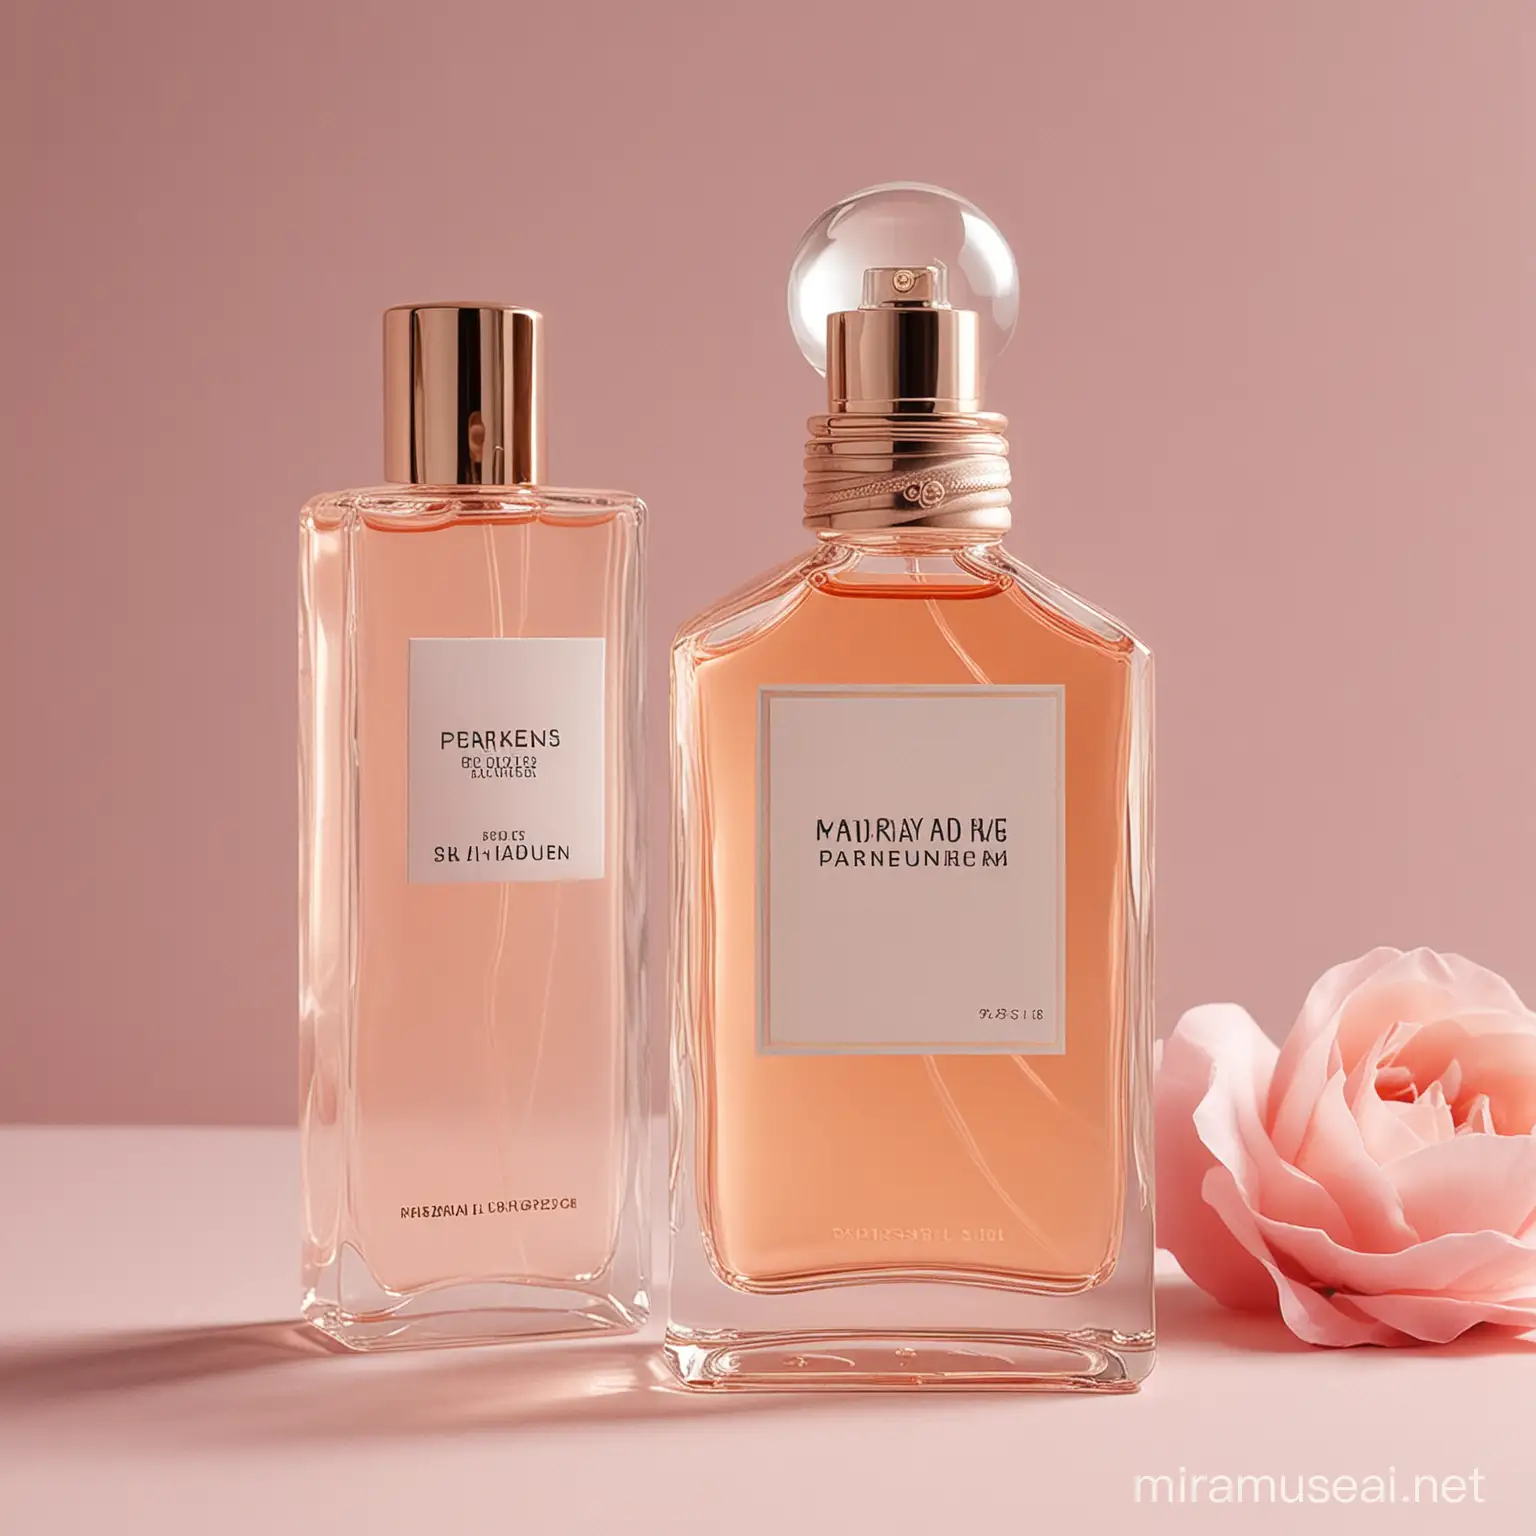 Elegant Perfume Bottle with Stylish Packaging